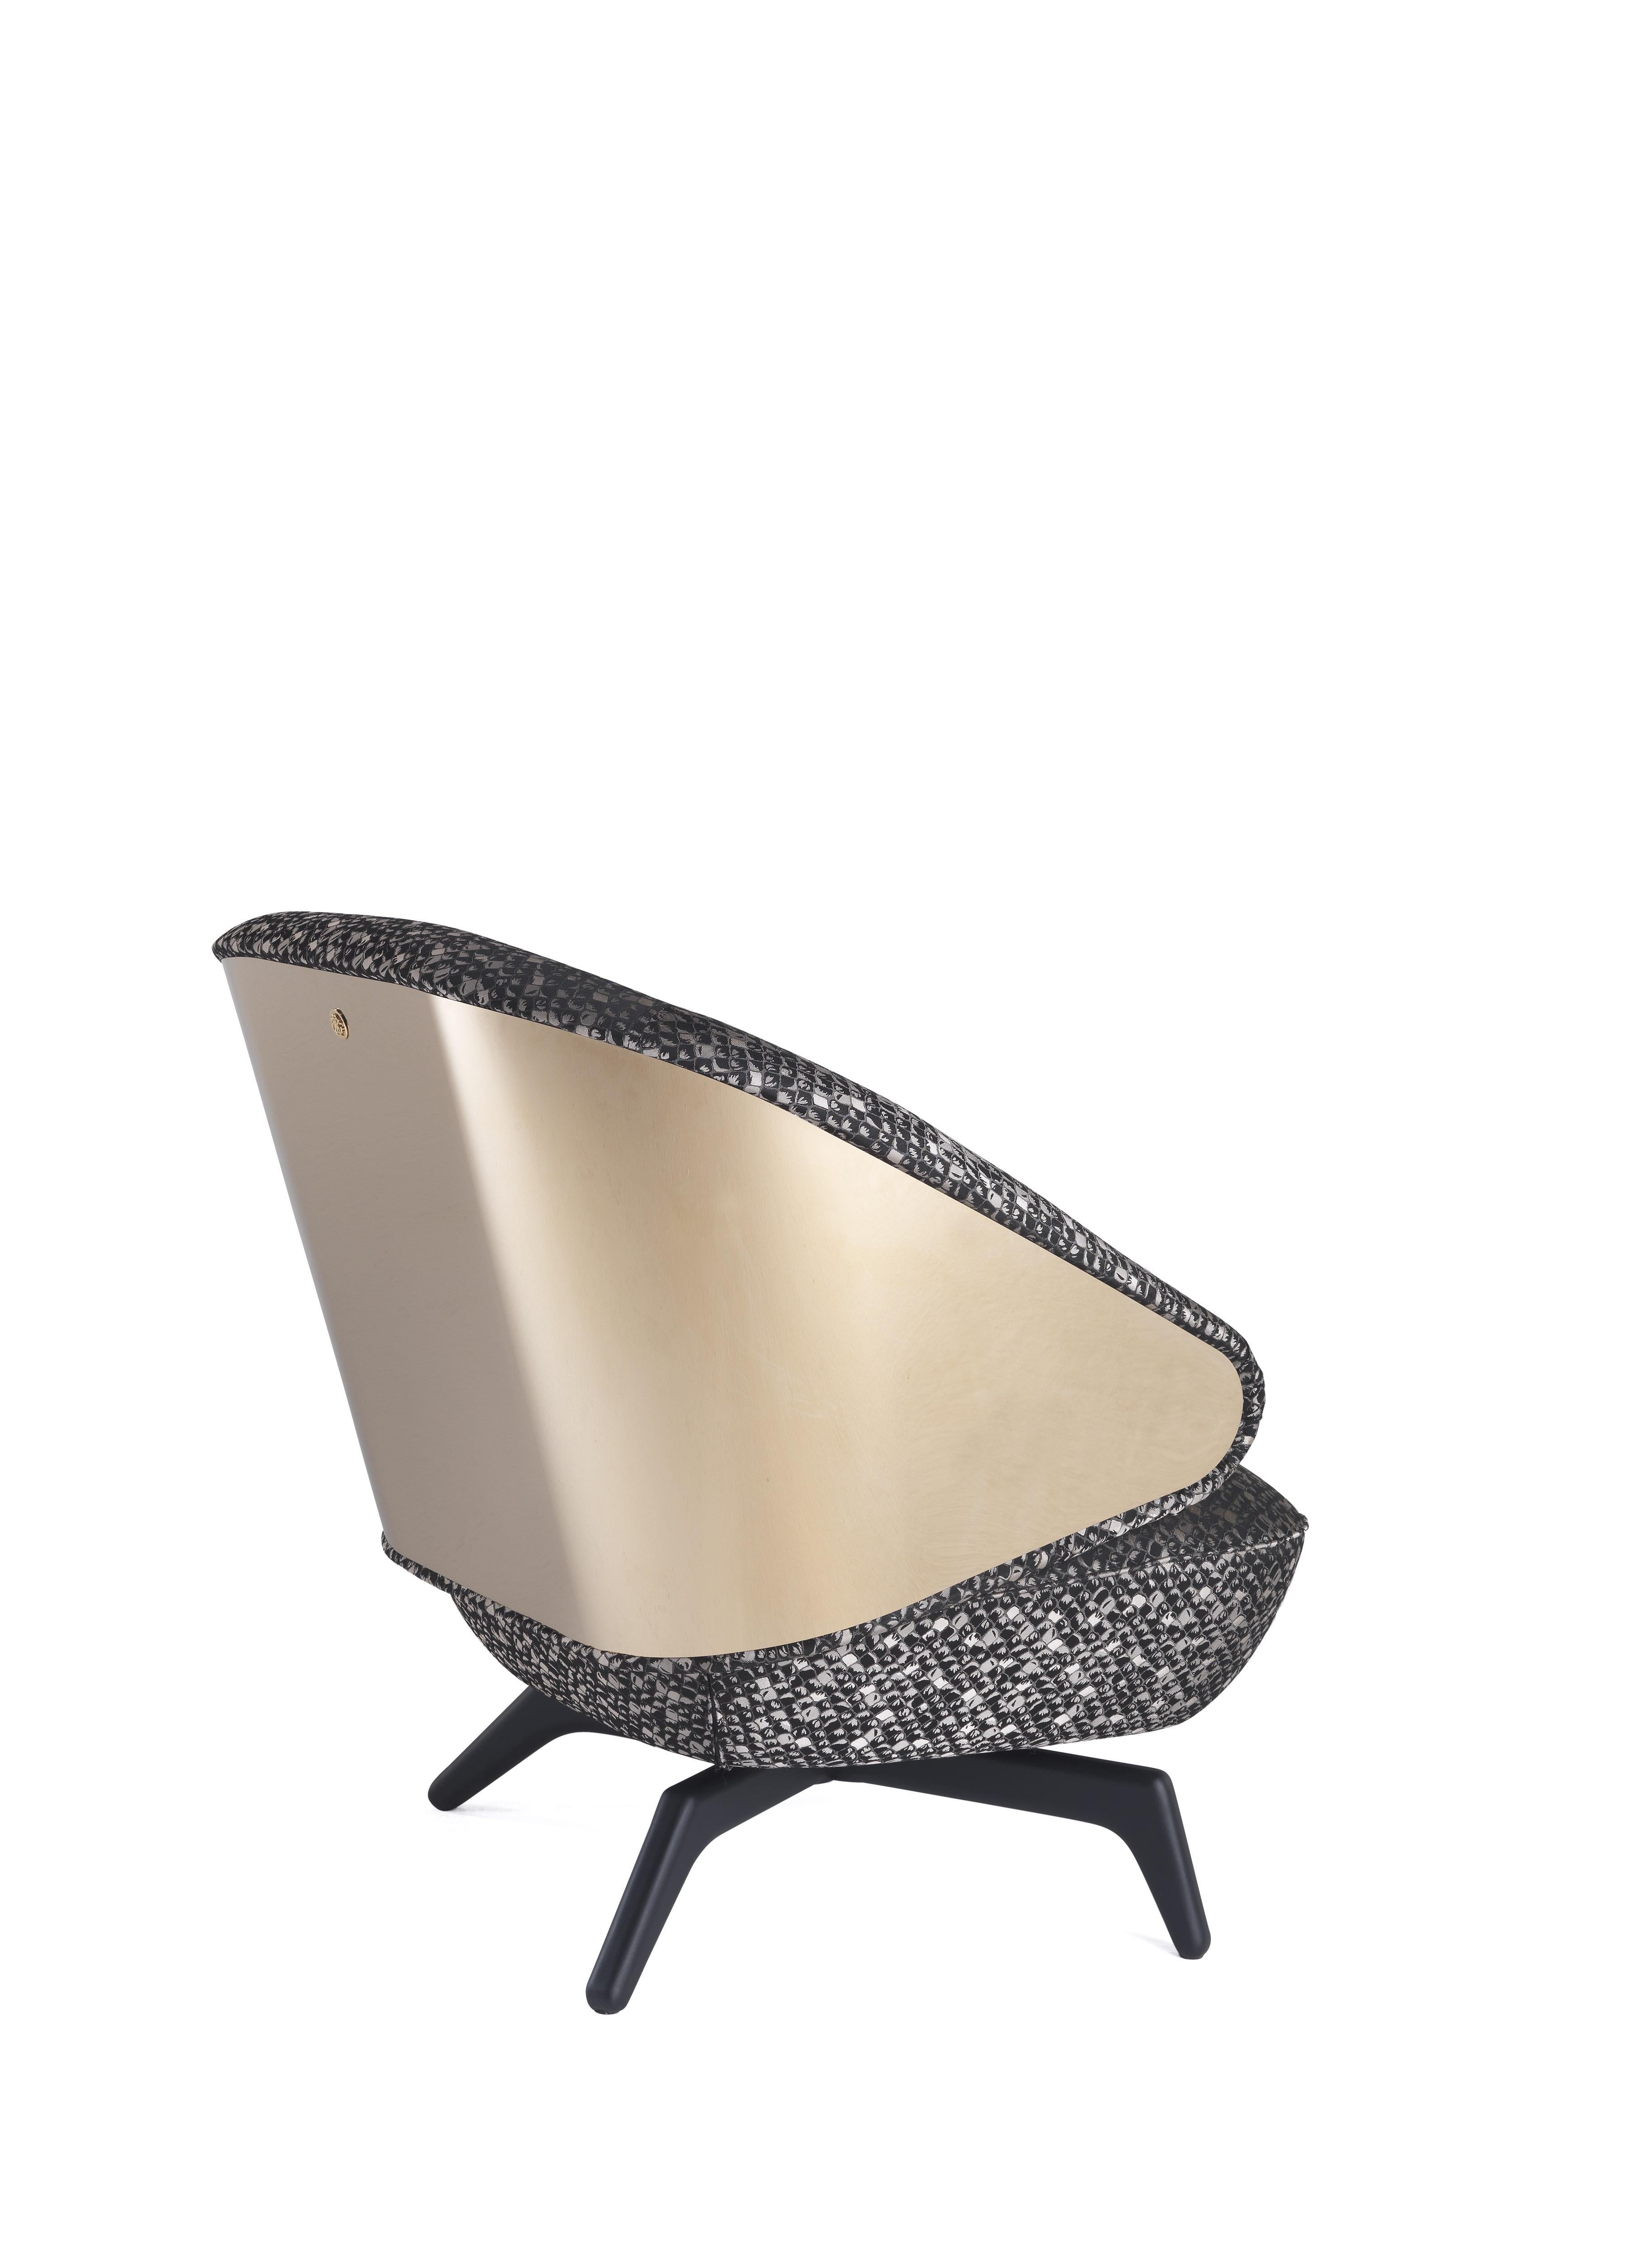 Nouveau design séduisant pour le fauteuil Key West. De formes sinueuses et arrondies, il est doté d'un dossier enveloppant en métal doré poli et d'une assise confortable. Sensualité, chaleur et charme : les ingrédients parfaits pour créer un cadre